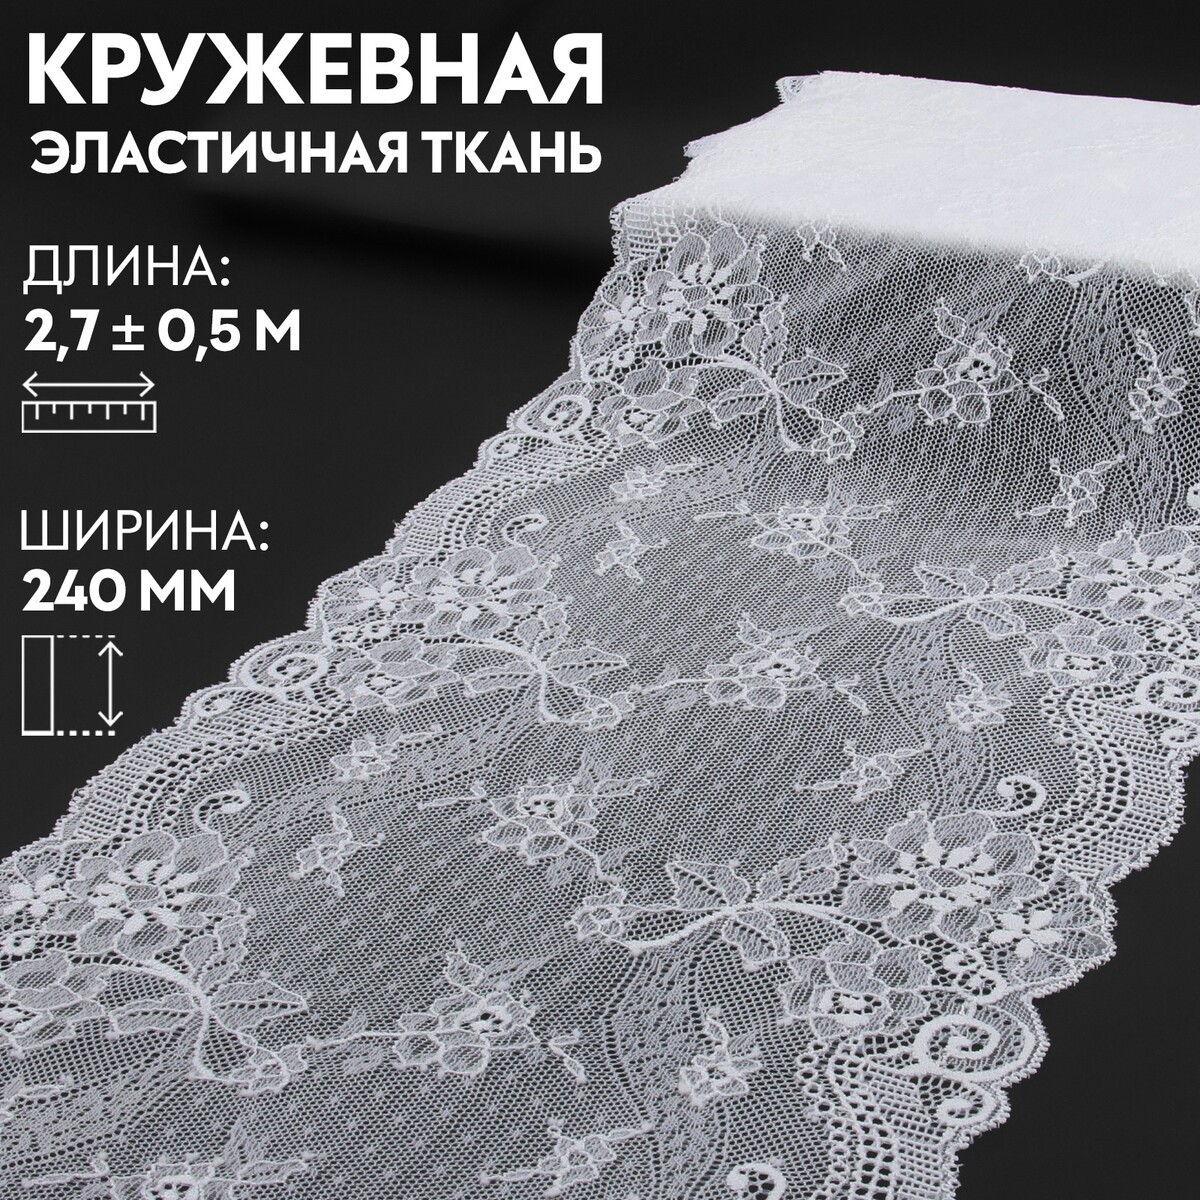 Кружевная эластичная ткань, 240 мм × 2,7 ± 0,5 м, цвет белый